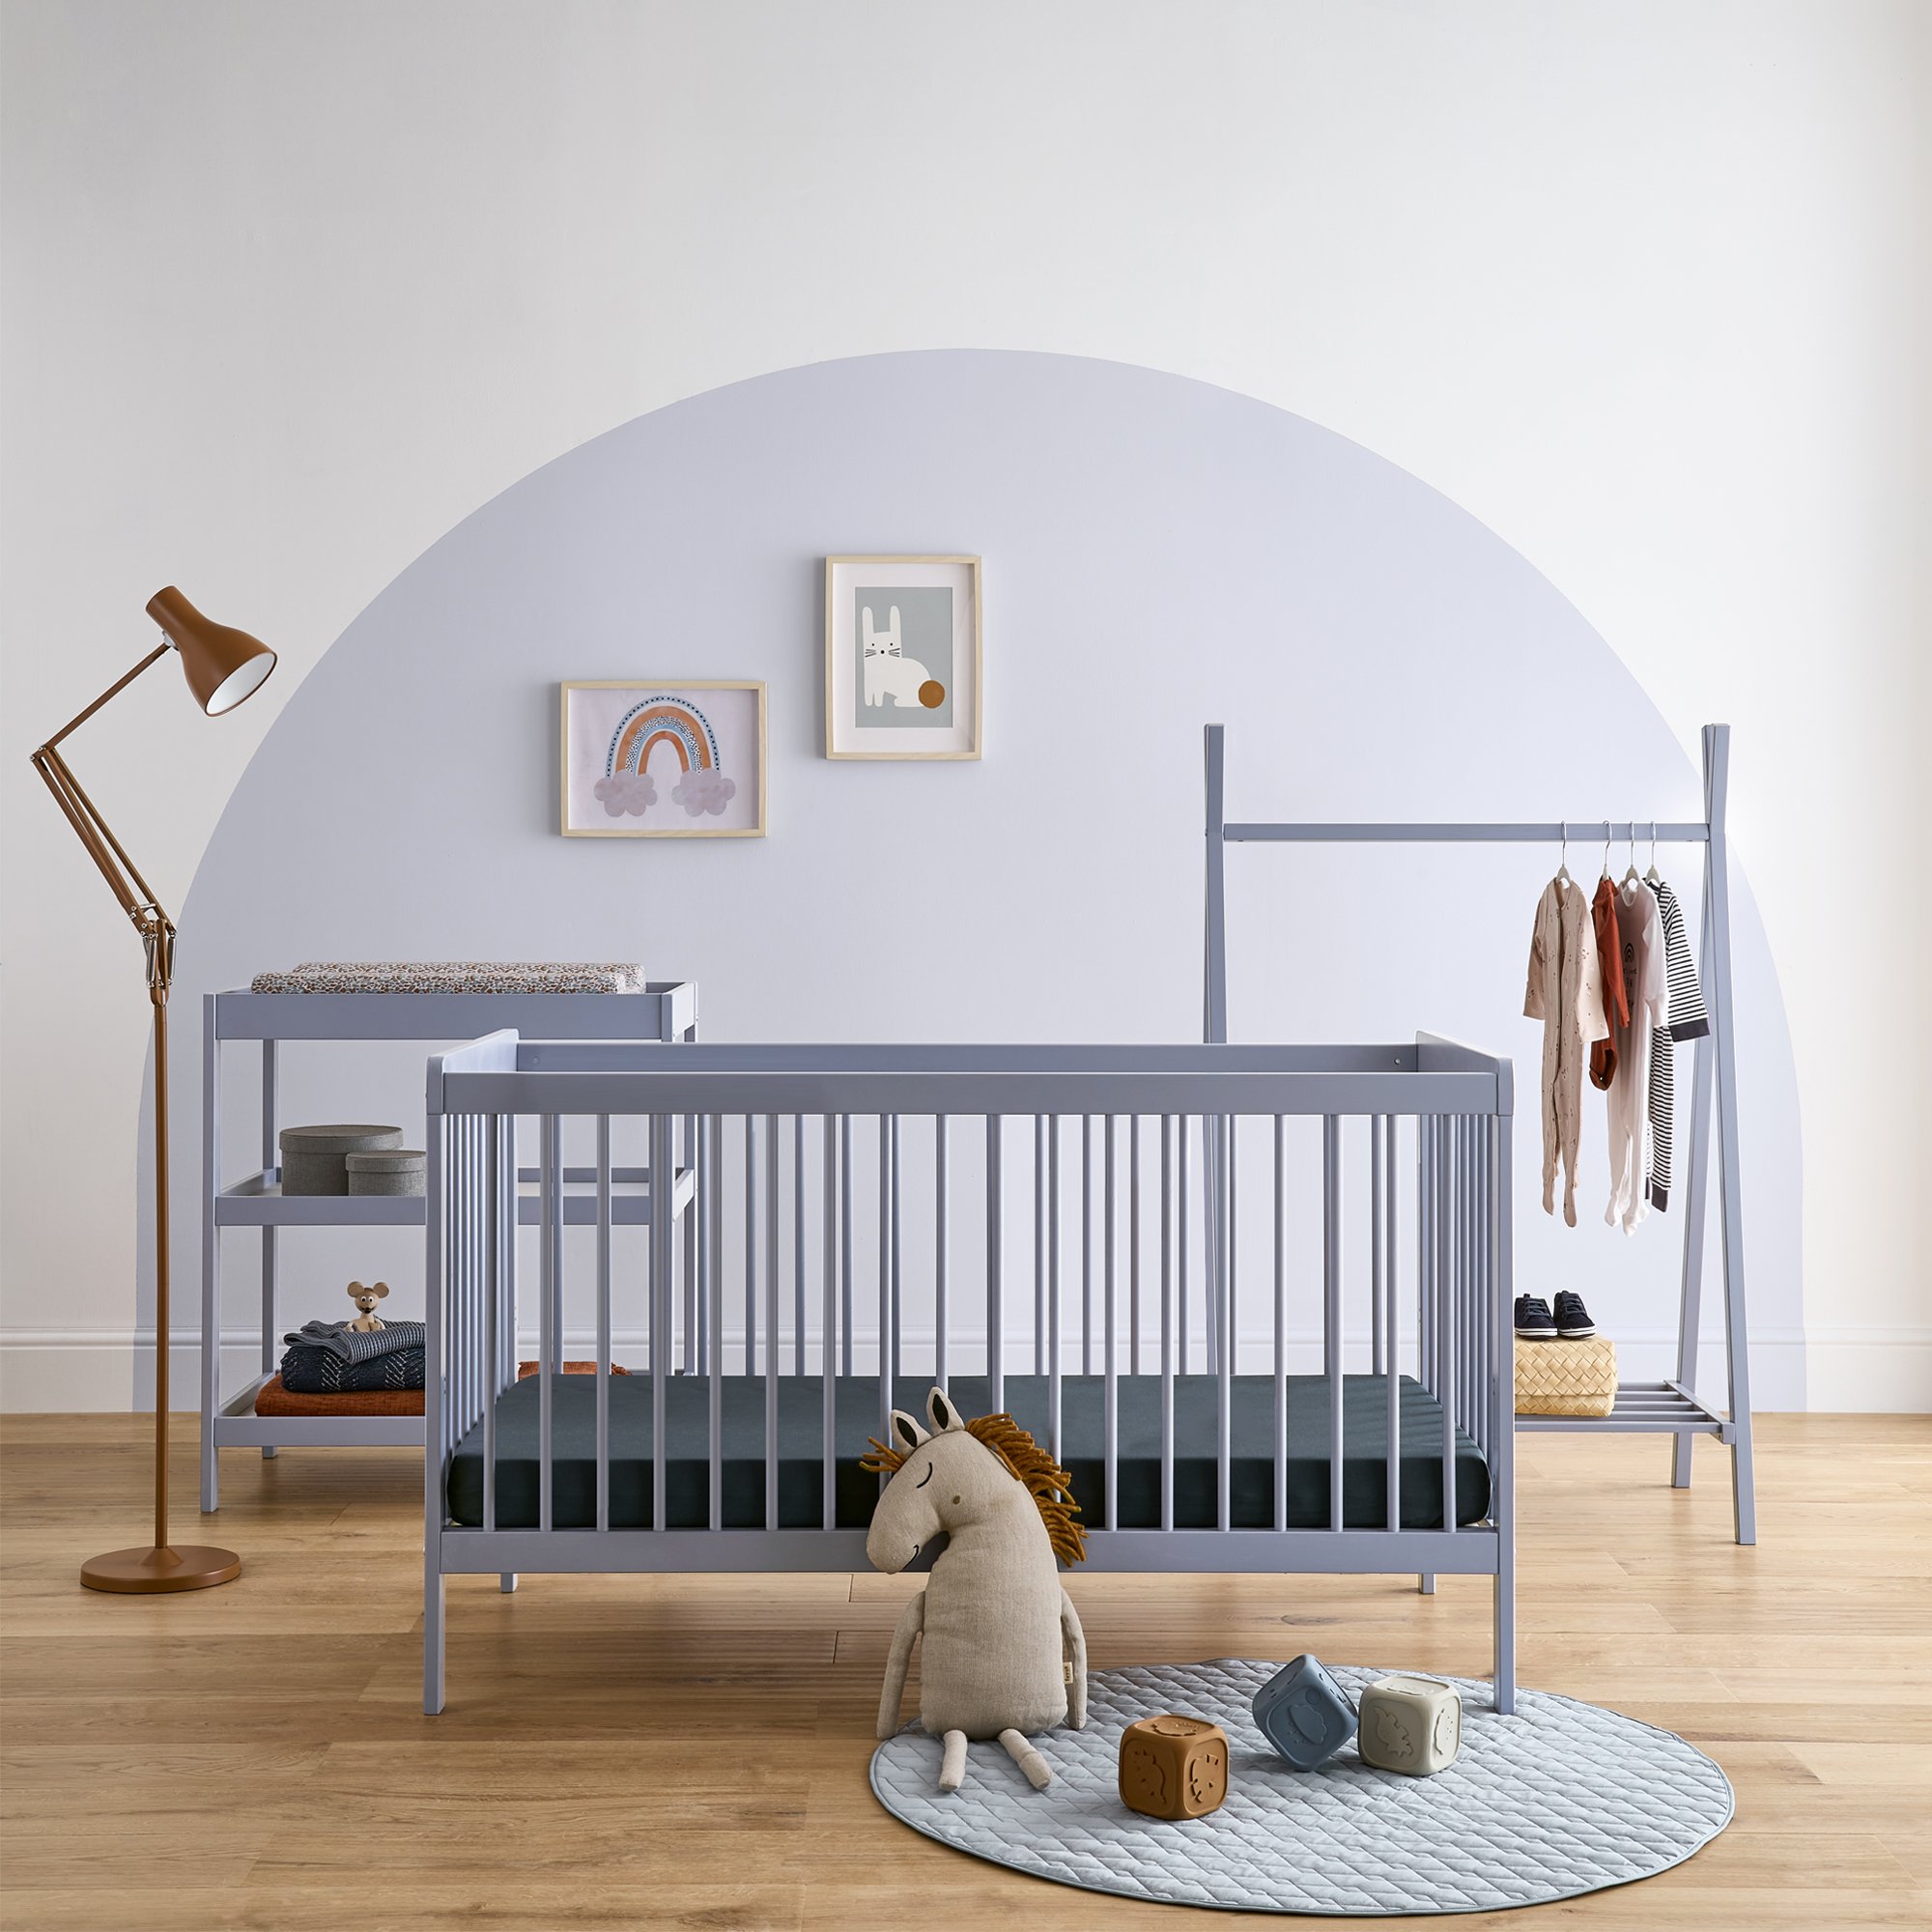 Cuddleco Nola 3 Piece Nursery Furniture Set - Blue